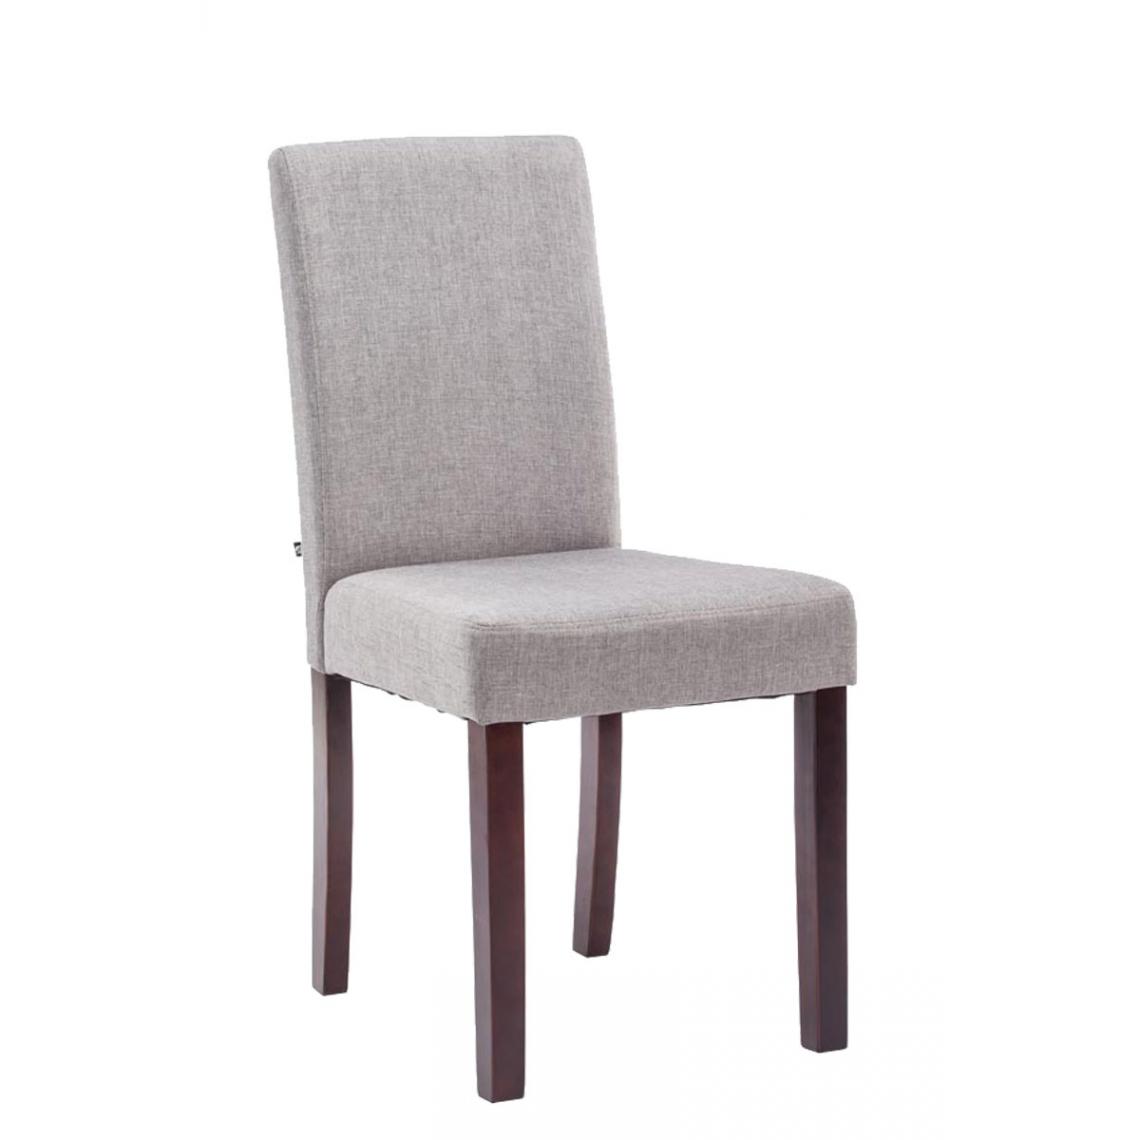 Icaverne - Splendide Chaise de salle à manger categorie Rabat tissu cappuccino couleur gris clair - Chaises